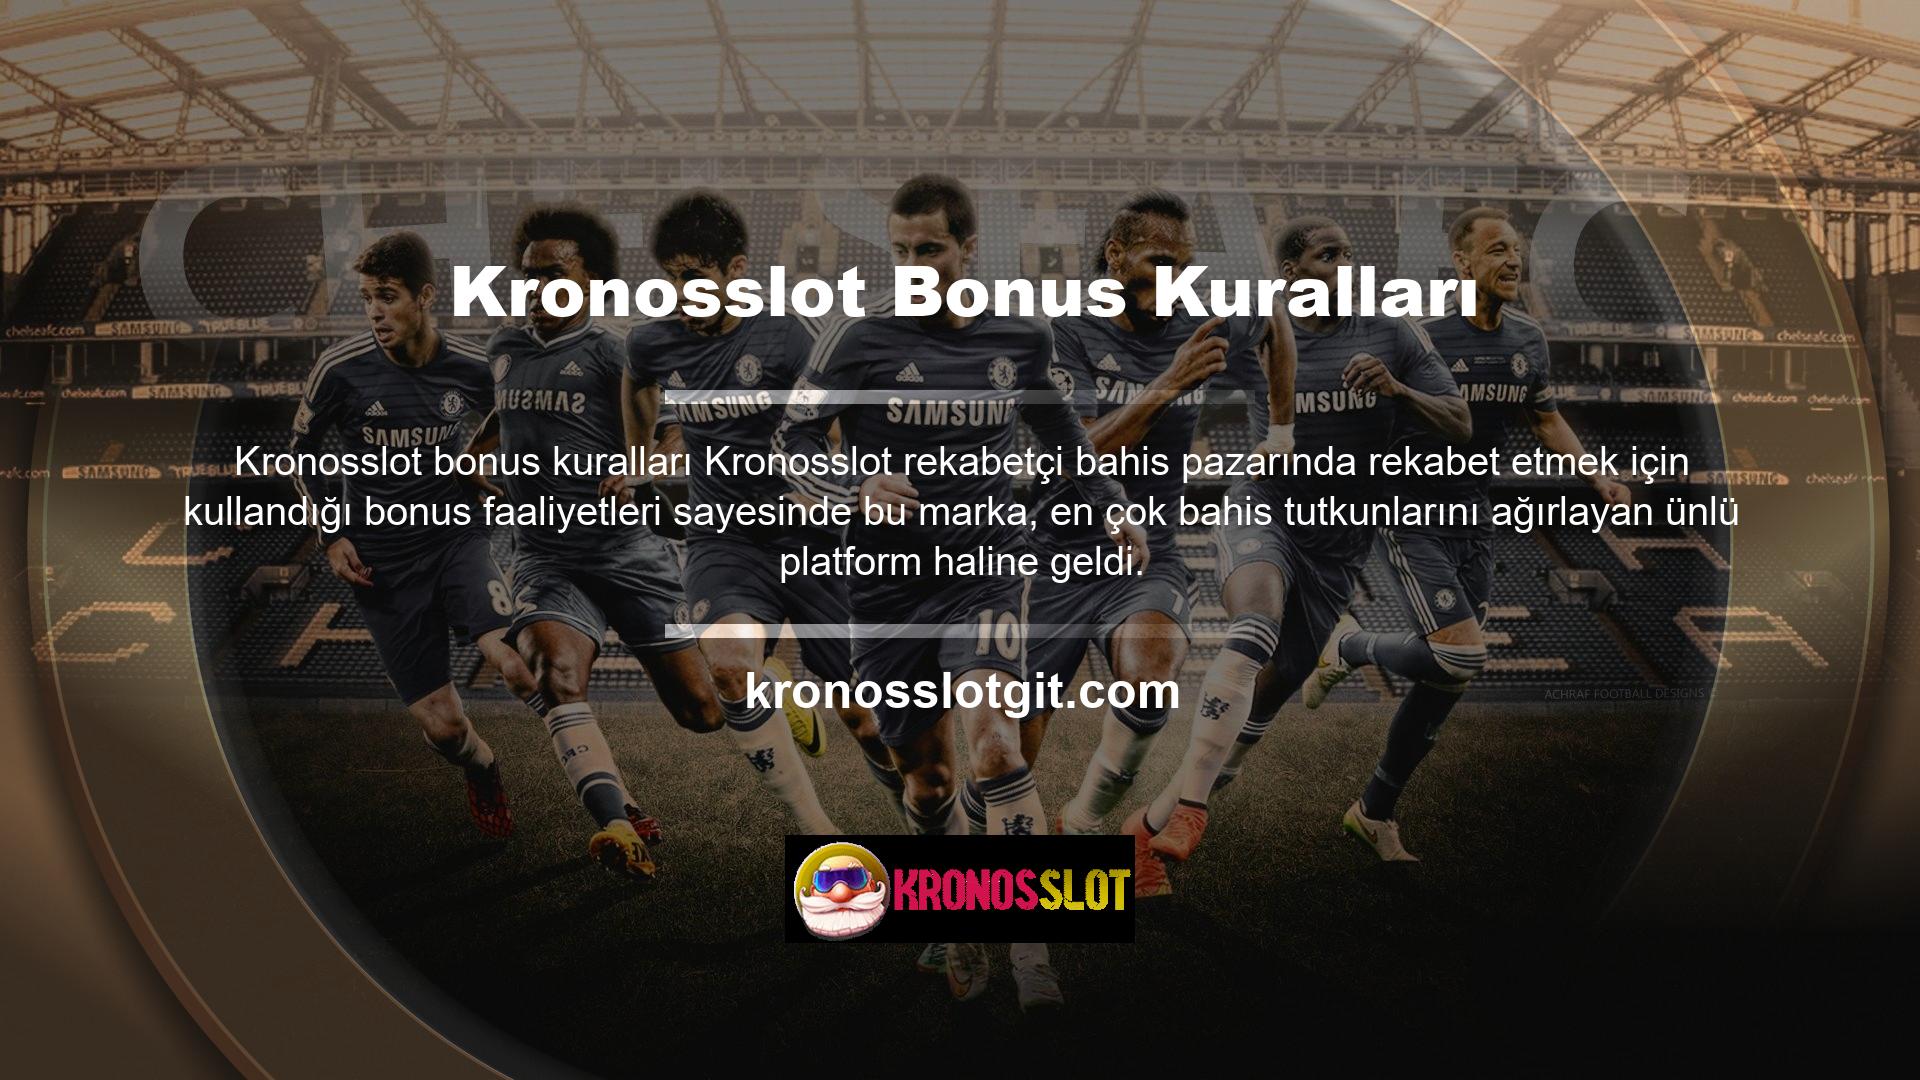 Lisanslı bahis sitelerinden biri olan Kronosslot, kullanıcıları memnun etmek, sektördeki tutarlılığı güçlendirmek ve katılmayı düşünen tereddütlü kullanıcılara kapıyı açmak için Kronosslot bonusları sunmaktadır